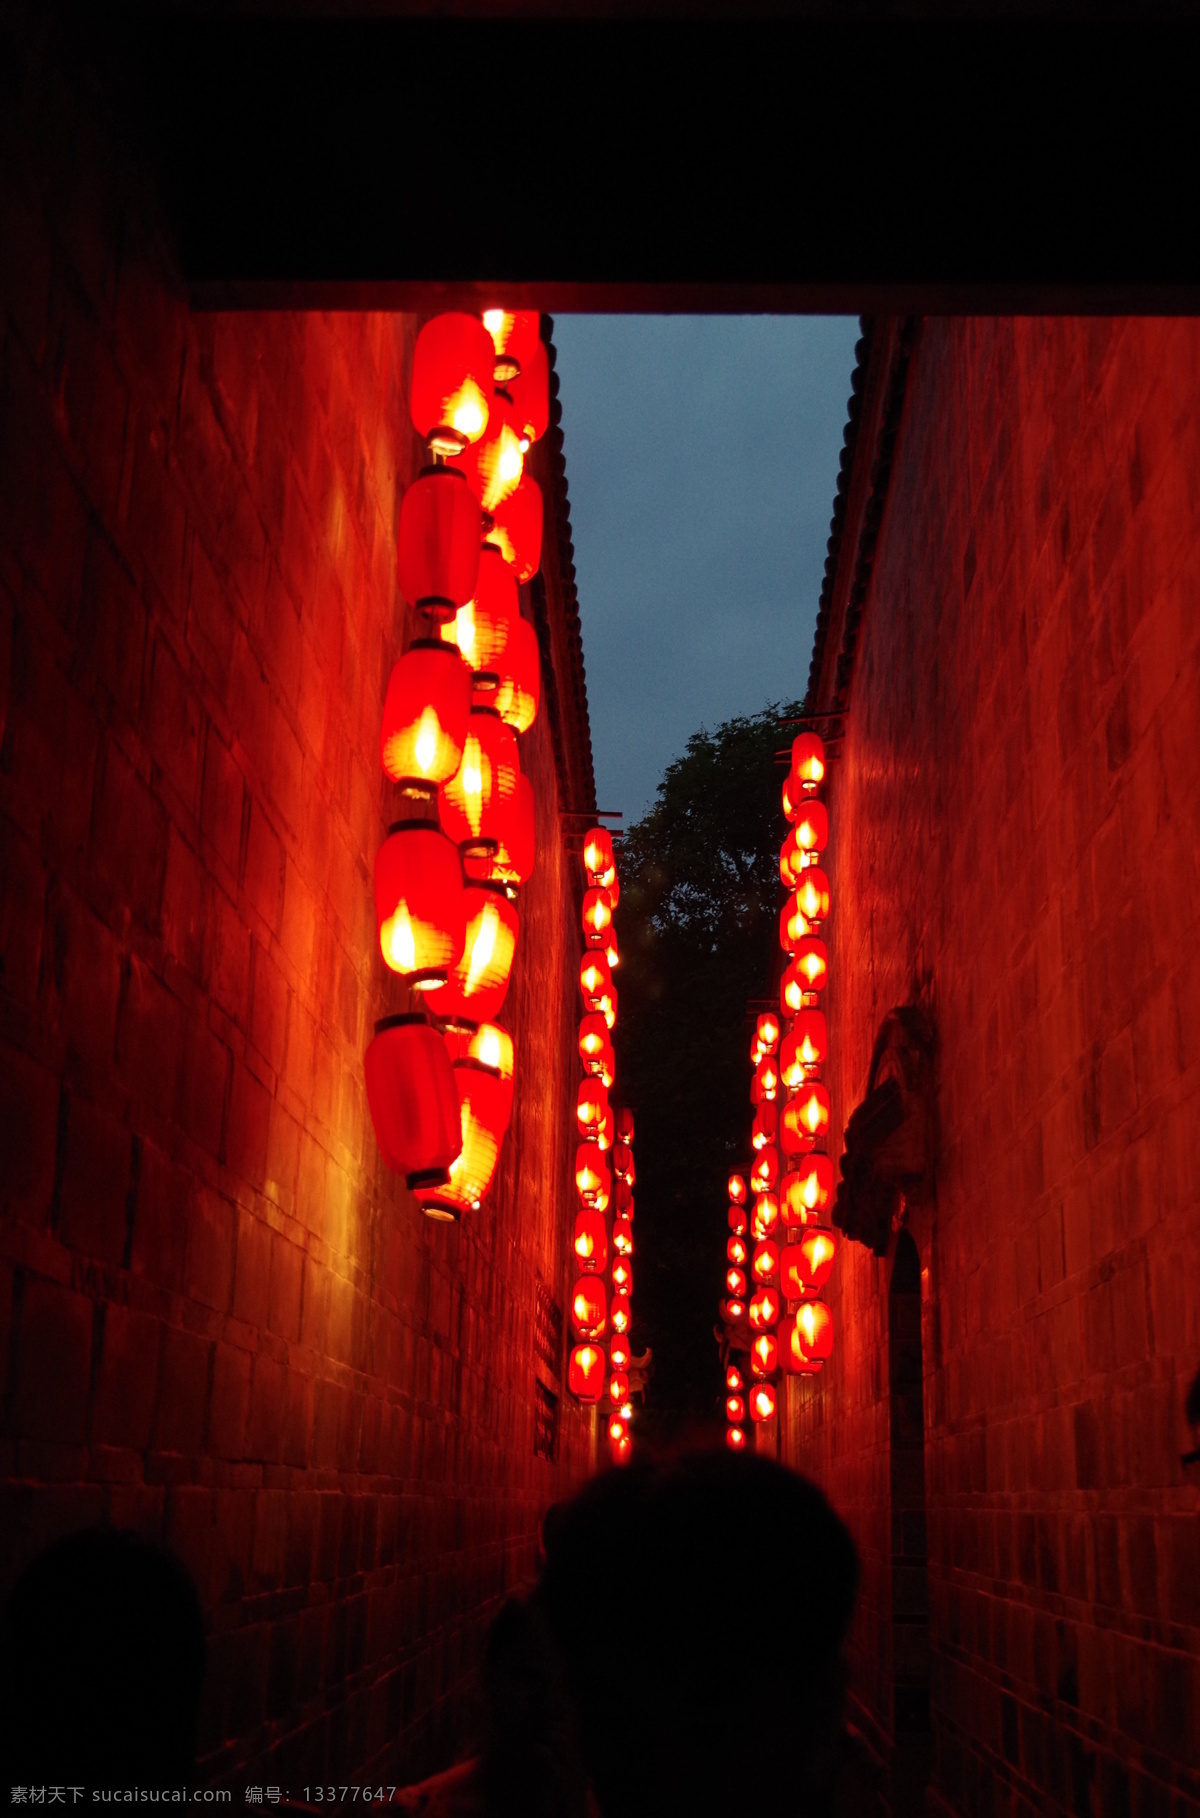 锦里红灯笼 成都 锦里 红灯笼 古典 古街 建筑摄影 建筑园林